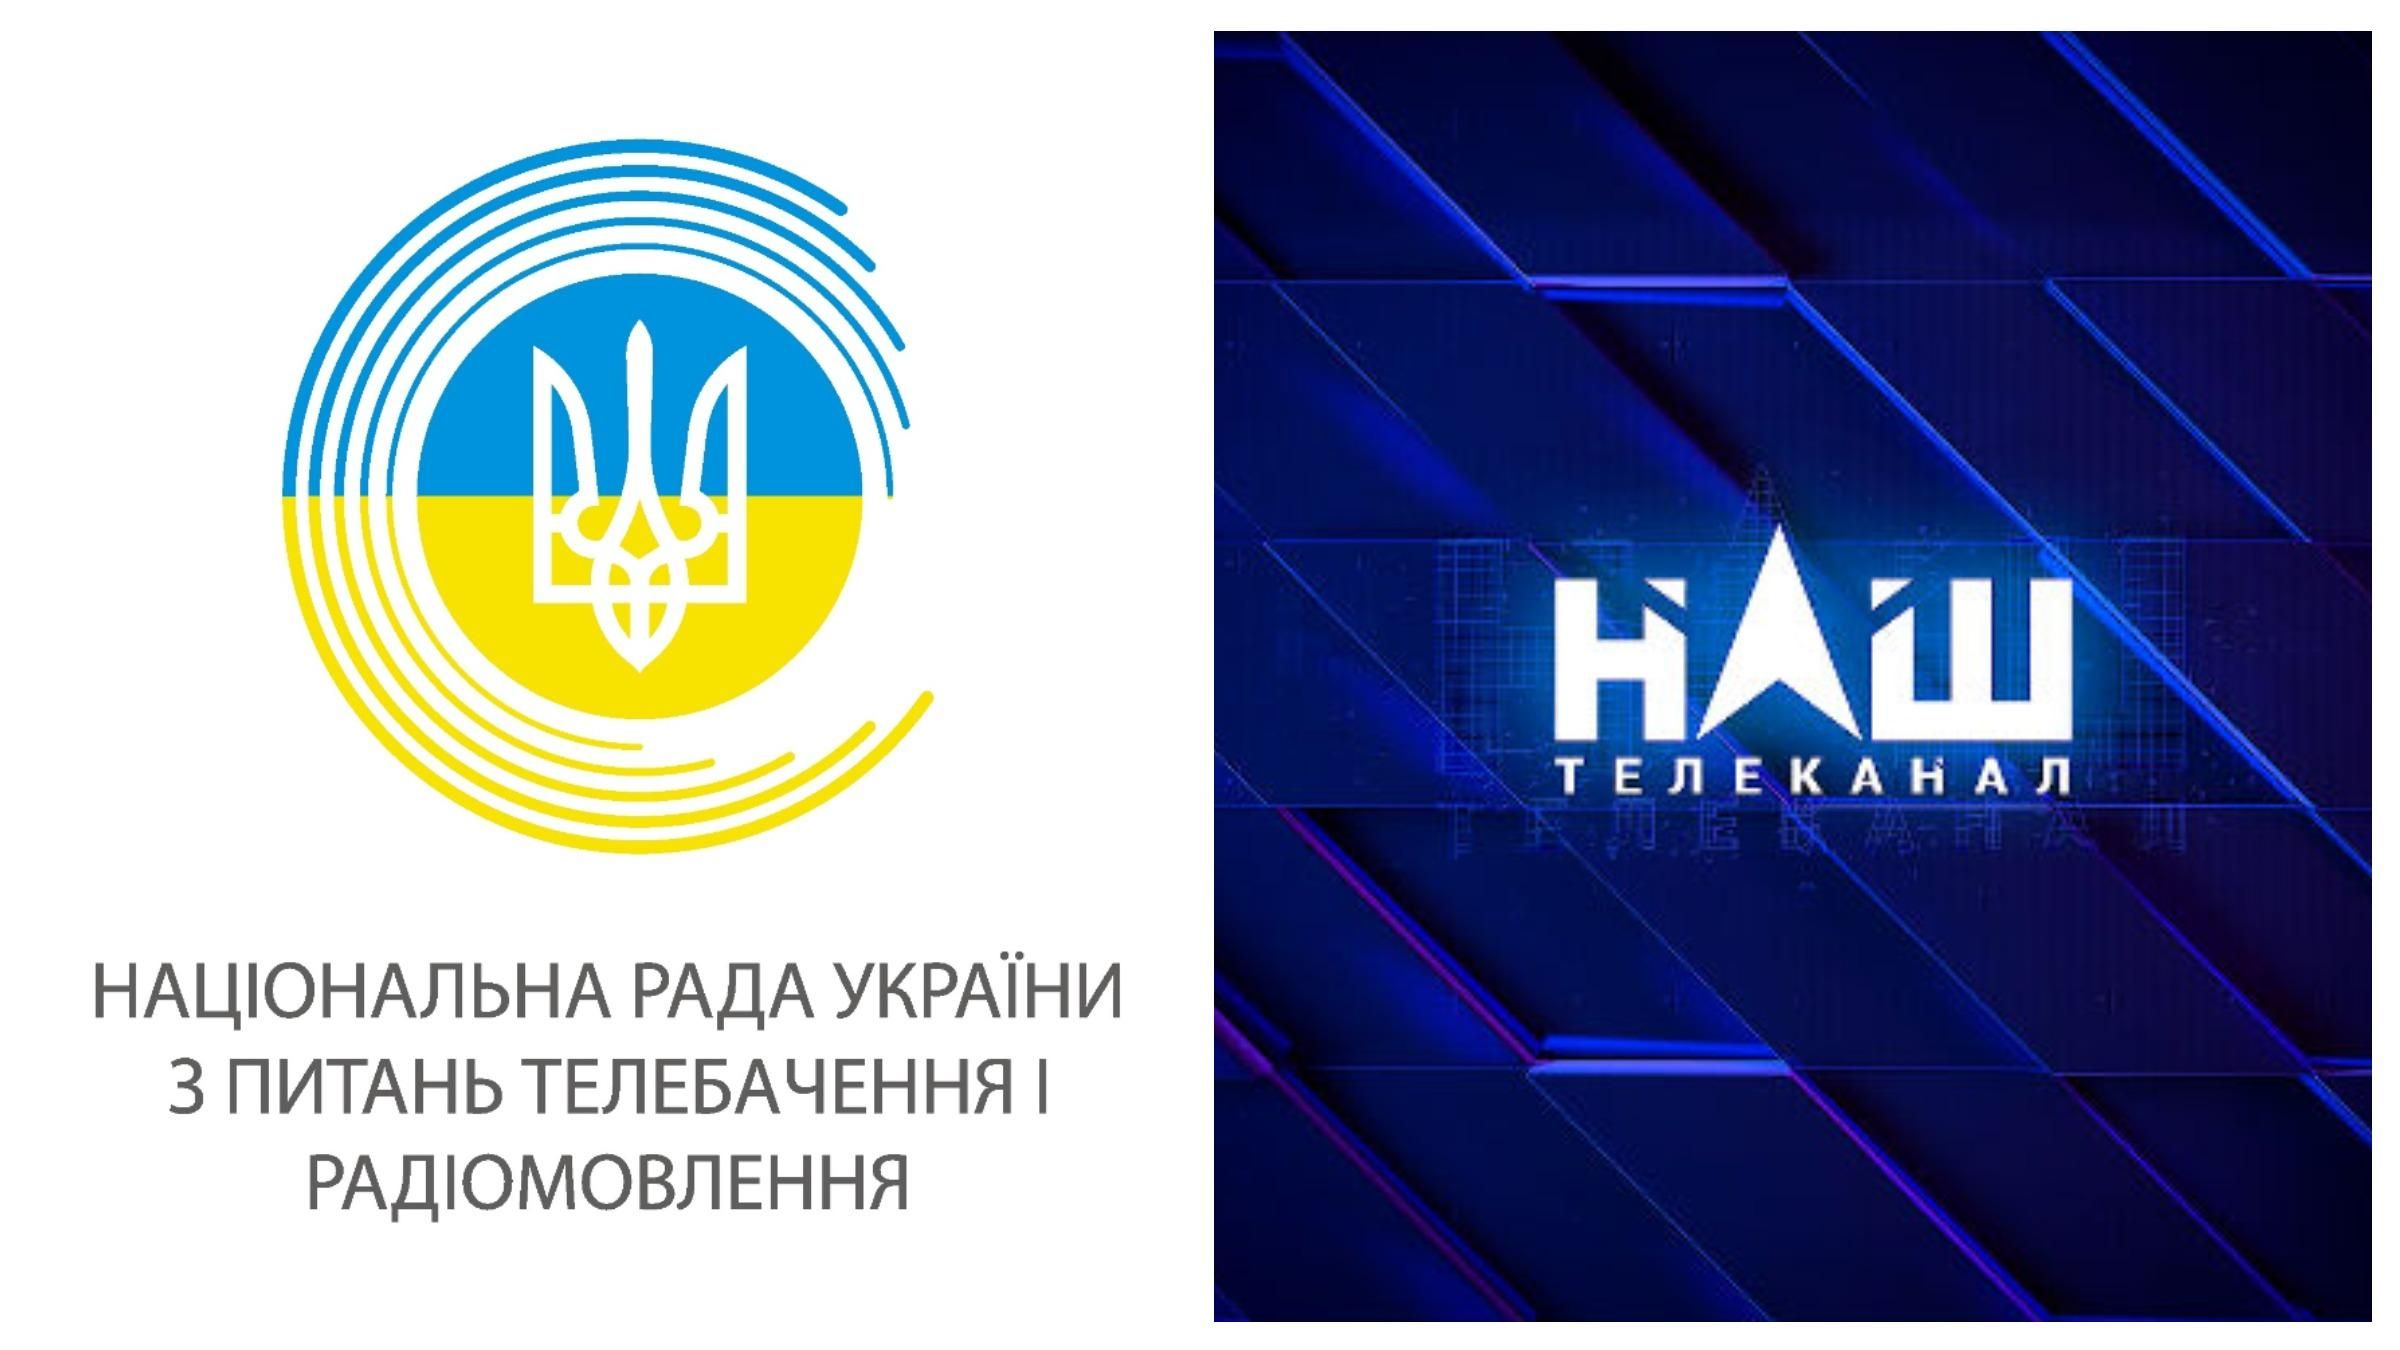 Пророссийскому телеканалу НАШ не переоформили спутниковую лицензию